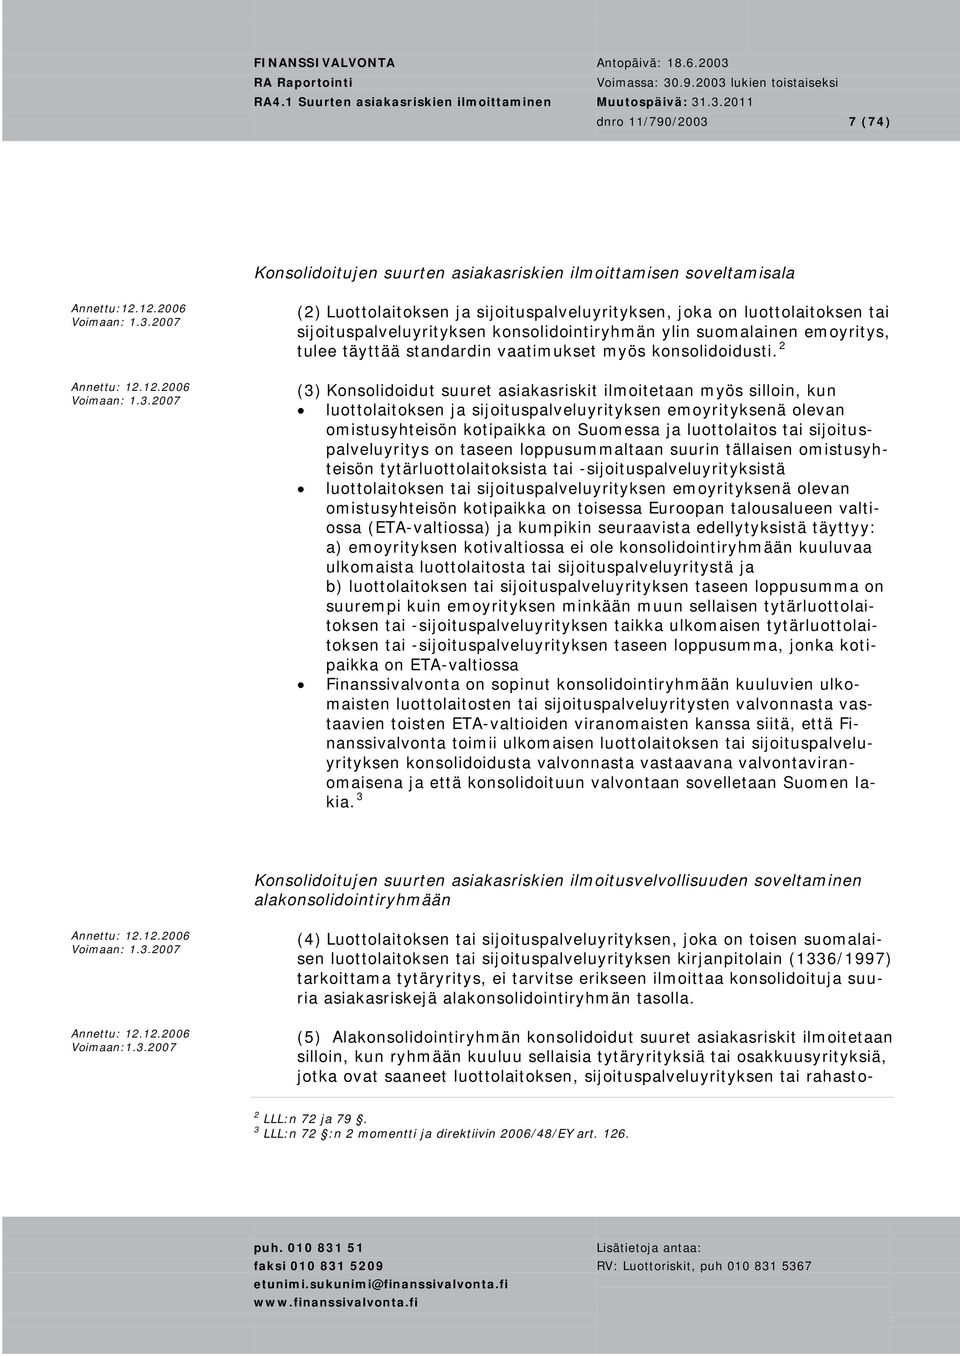 2007 (2) Luottolaitoksen ja sijoituspalveluyrityksen, joka on luottolaitoksen tai sijoituspalveluyrityksen konsolidointiryhmän ylin suomalainen emoyritys, tulee täyttää standardin vaatimukset myös